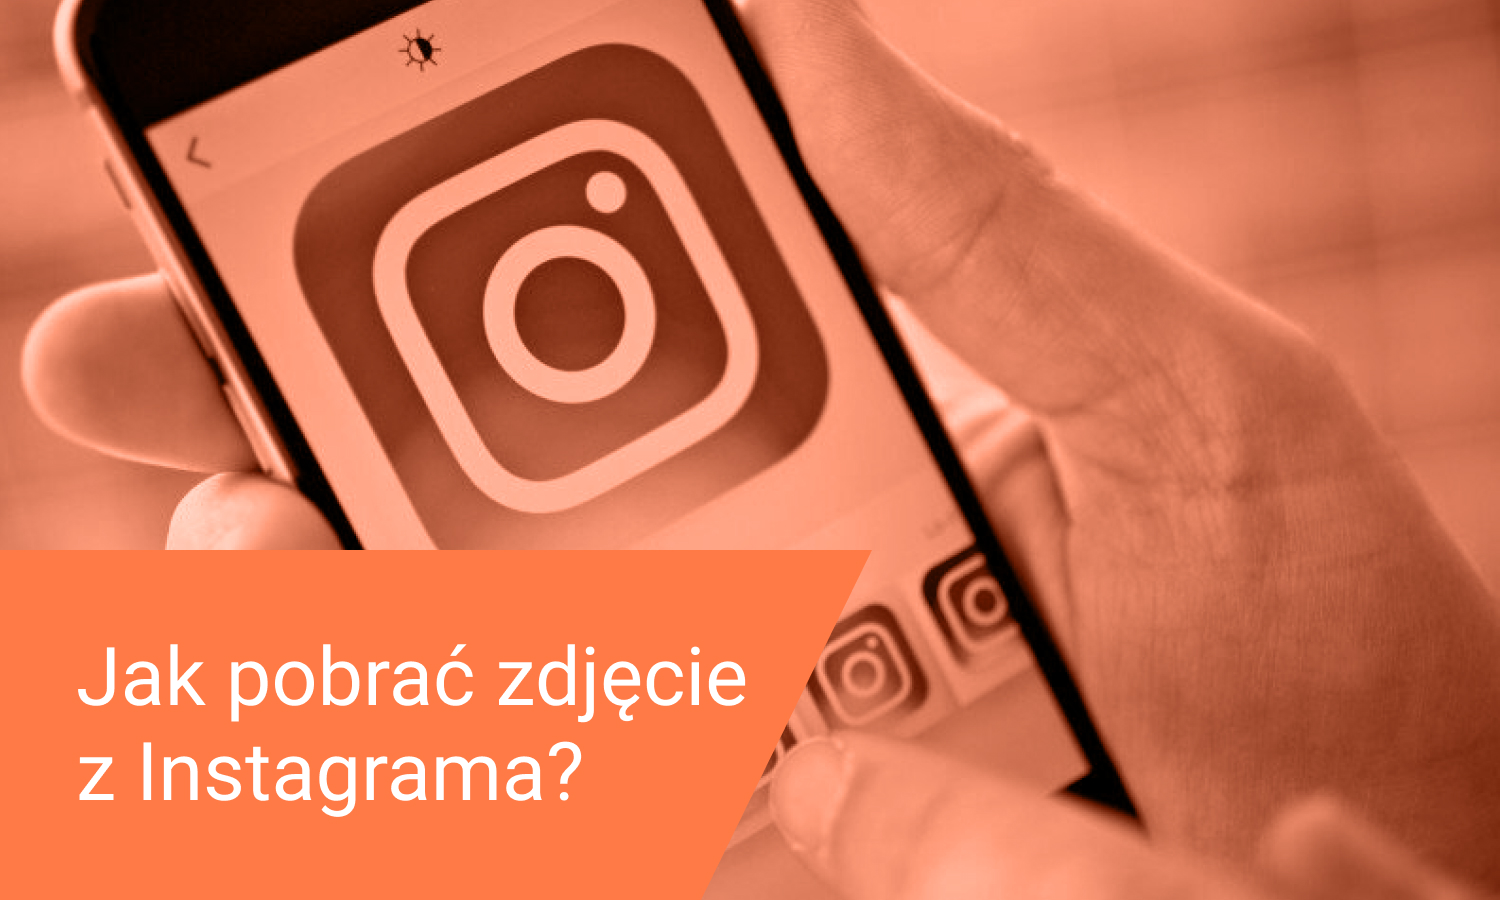 Jak pobrać zdjęcie z Instagrama? Instrukcja PC/Telefon